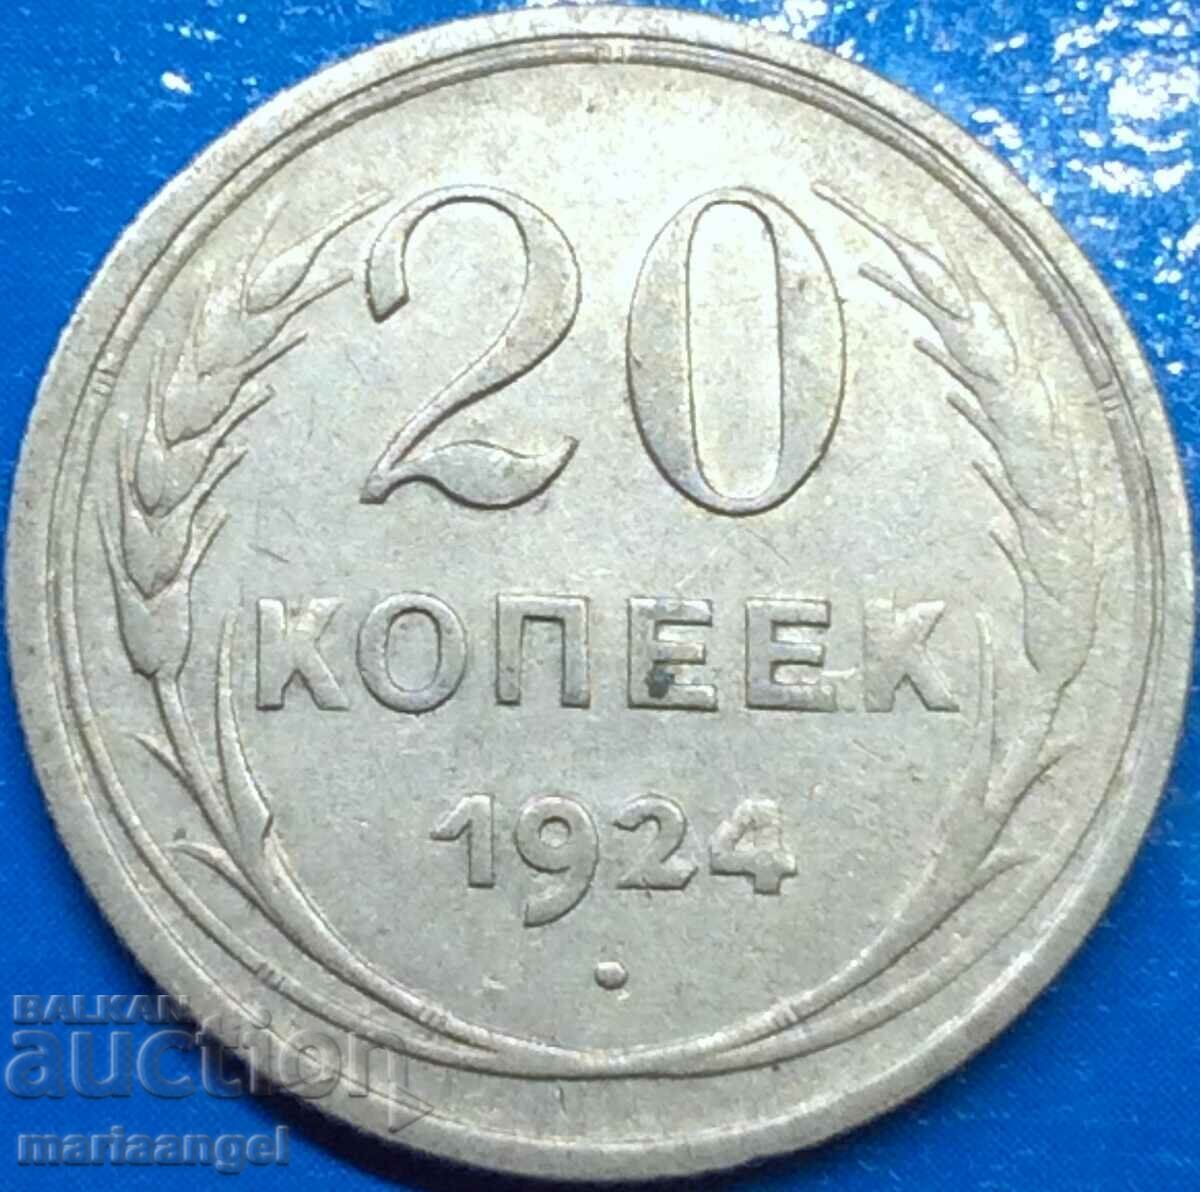 20 kopecks 1924 Russia USSR silver